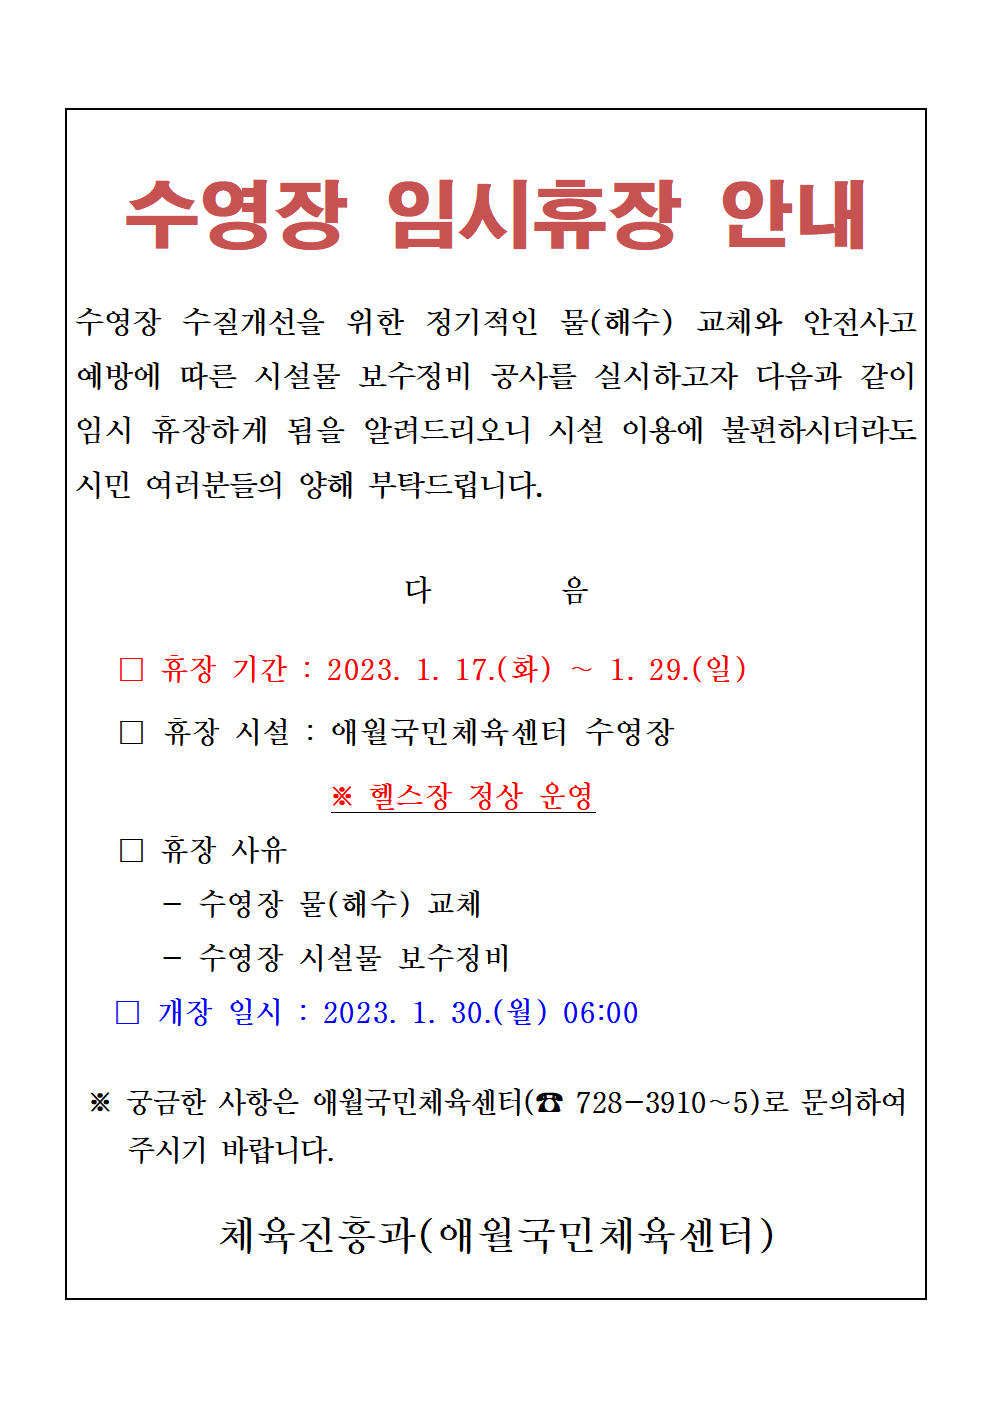 애월국민체육센터 수영장 임시휴장 안내-2023년 1월.png